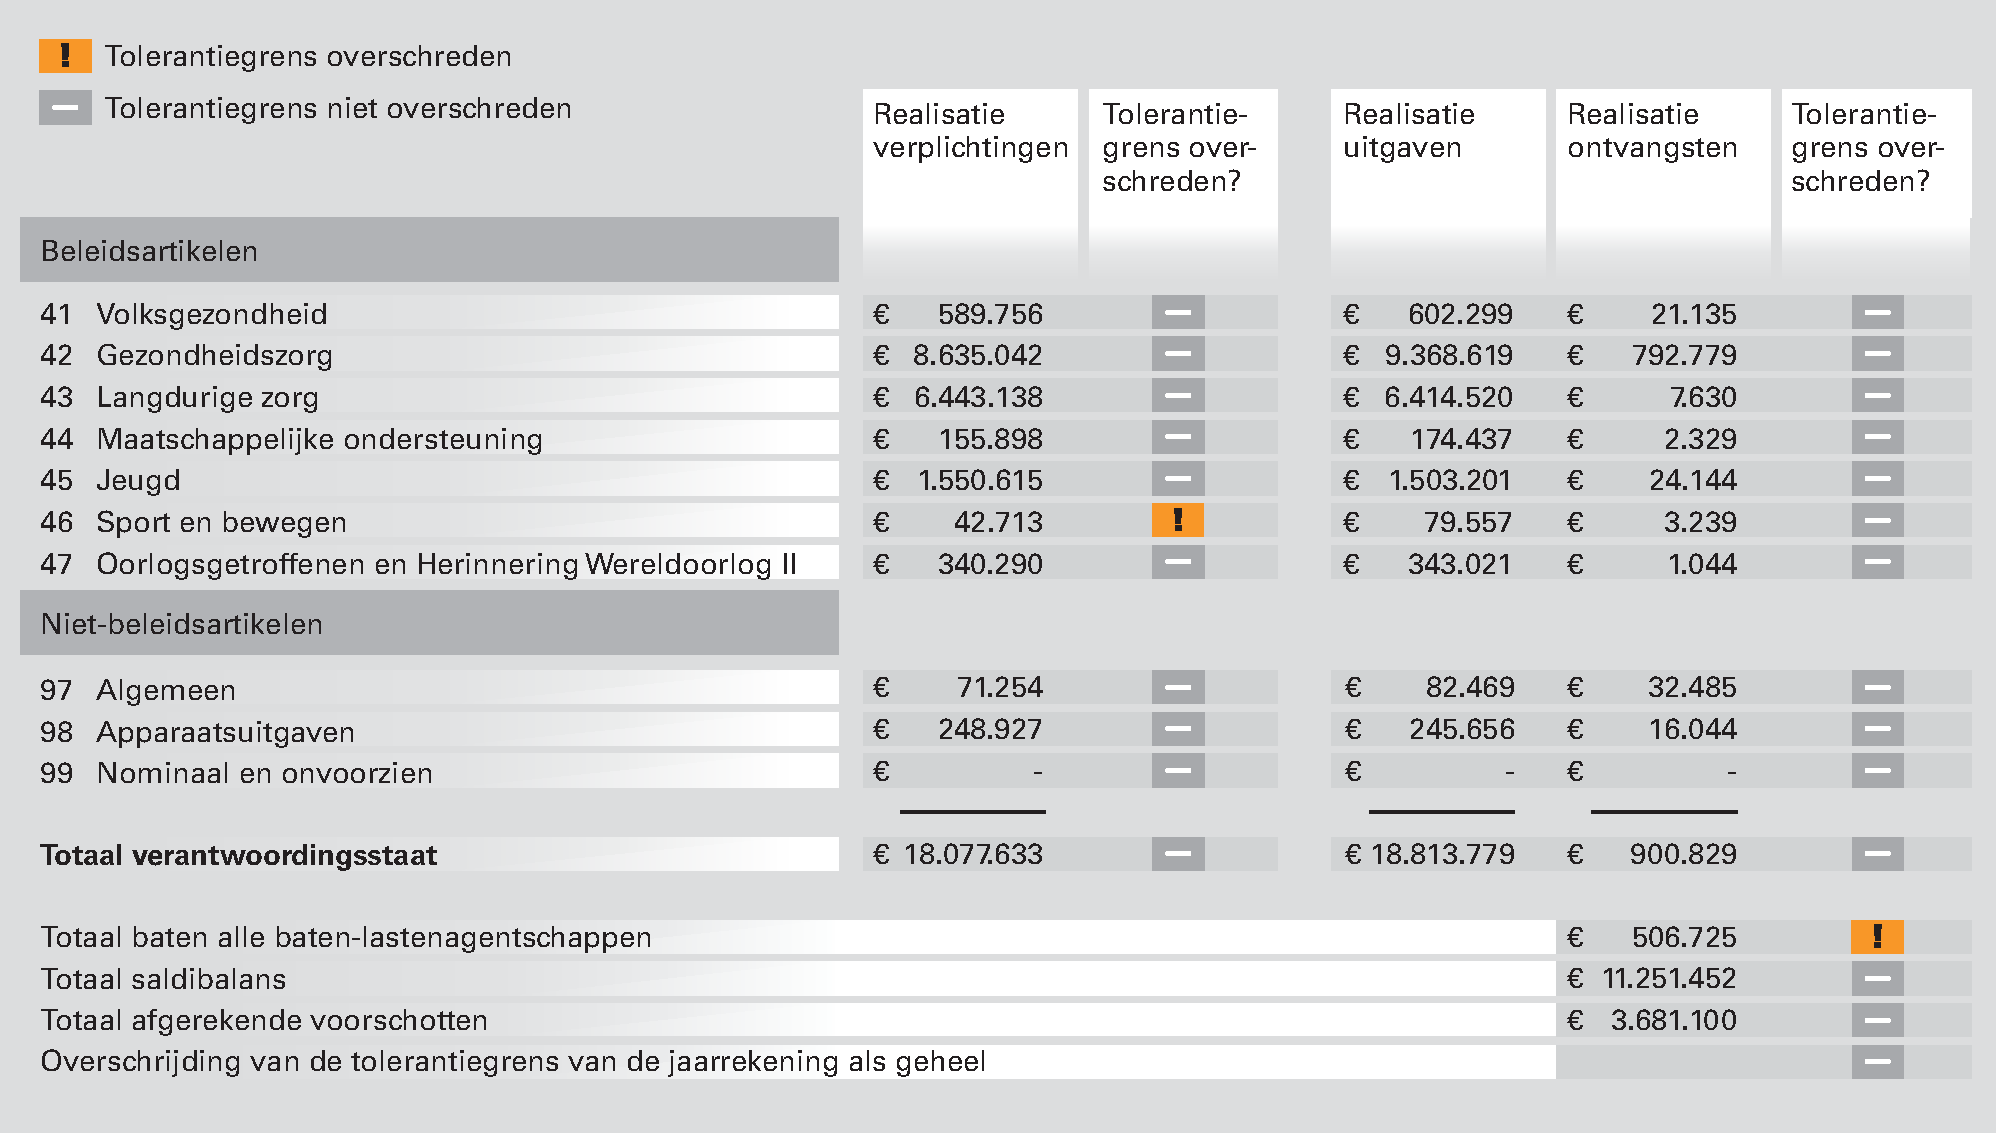 Figuur 7 Overschrijdingen tolerantiegrenzen in 2012 bij het Ministerie van VWS (bedragen x 1.000)